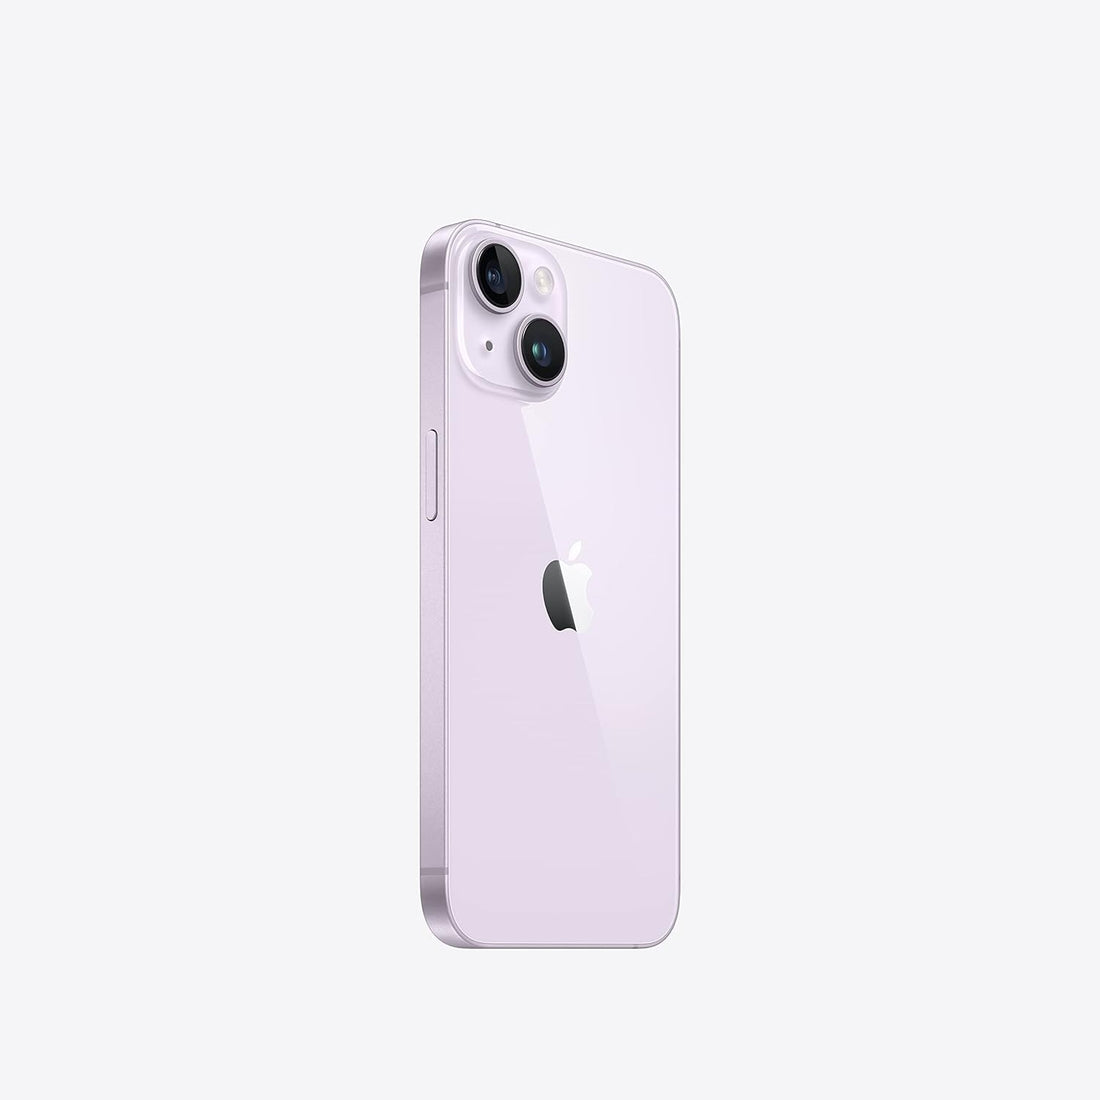 Apple iPhone 14 128GB (Unlocked) - Purple (Certified Refurbished)